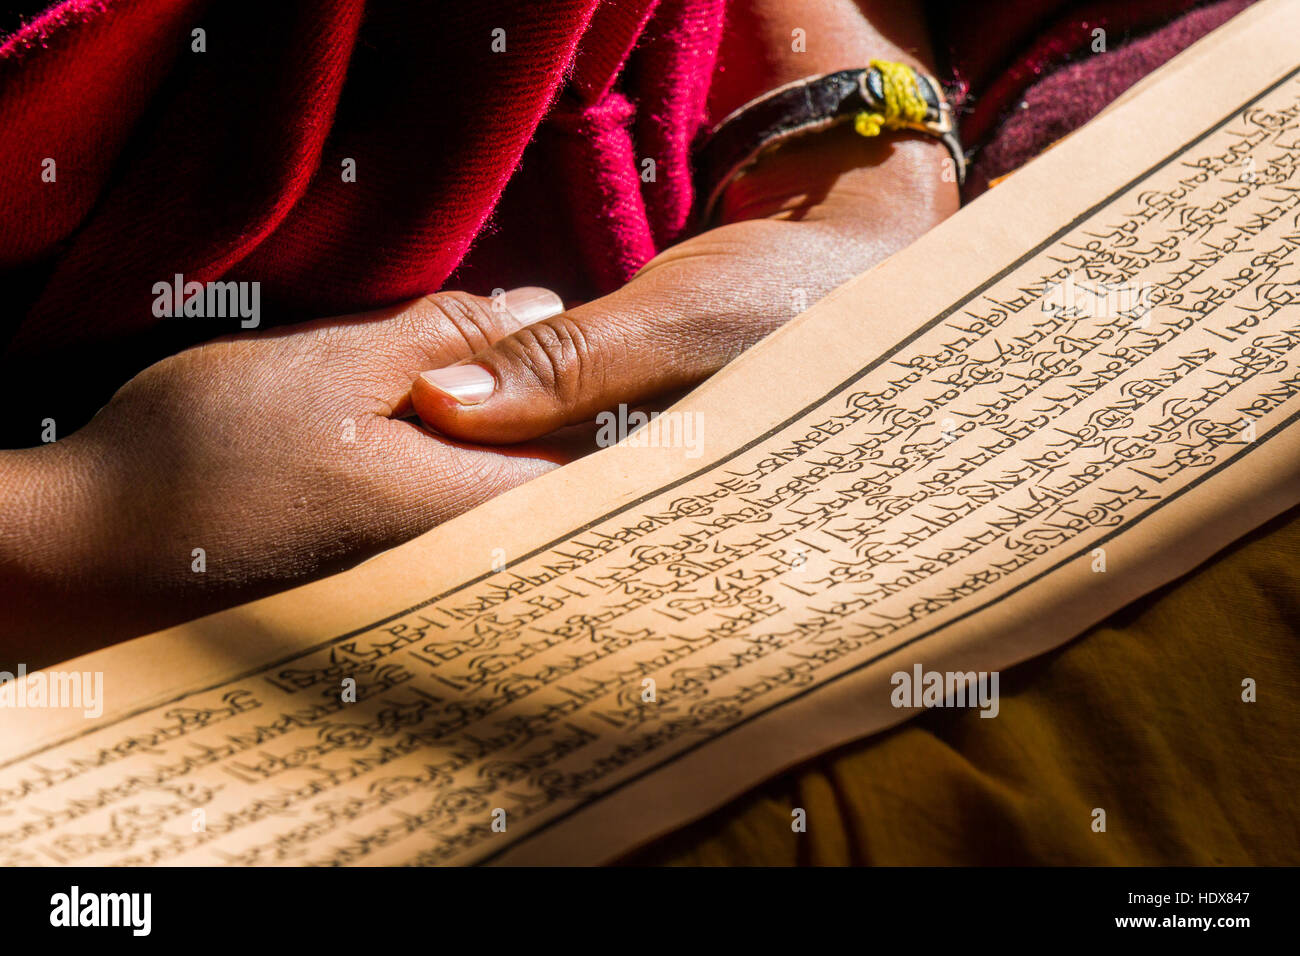 Un moine est en train de lire un livre de prières à l'intérieur du monastère thupten chholing gompa, détail du livre de prières et ses mains Banque D'Images